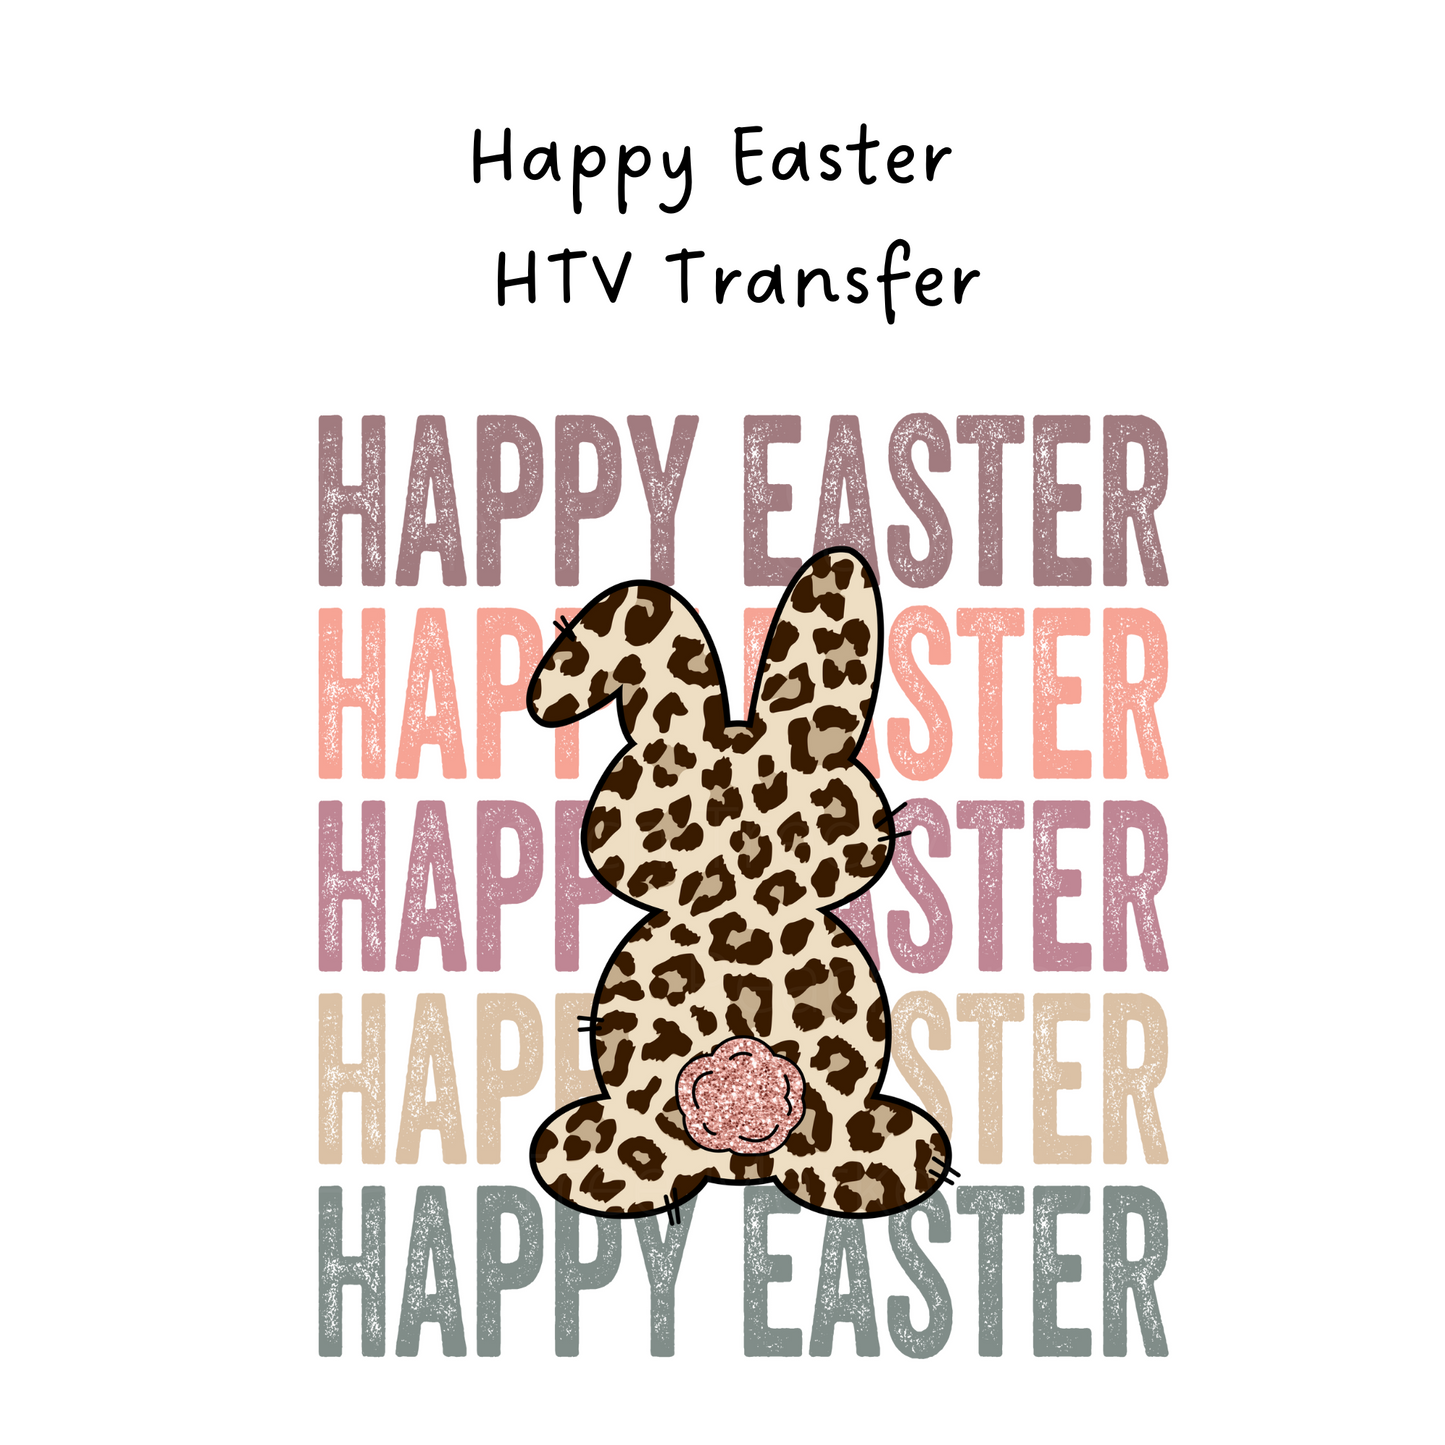 Happy Easter HTV Transfer